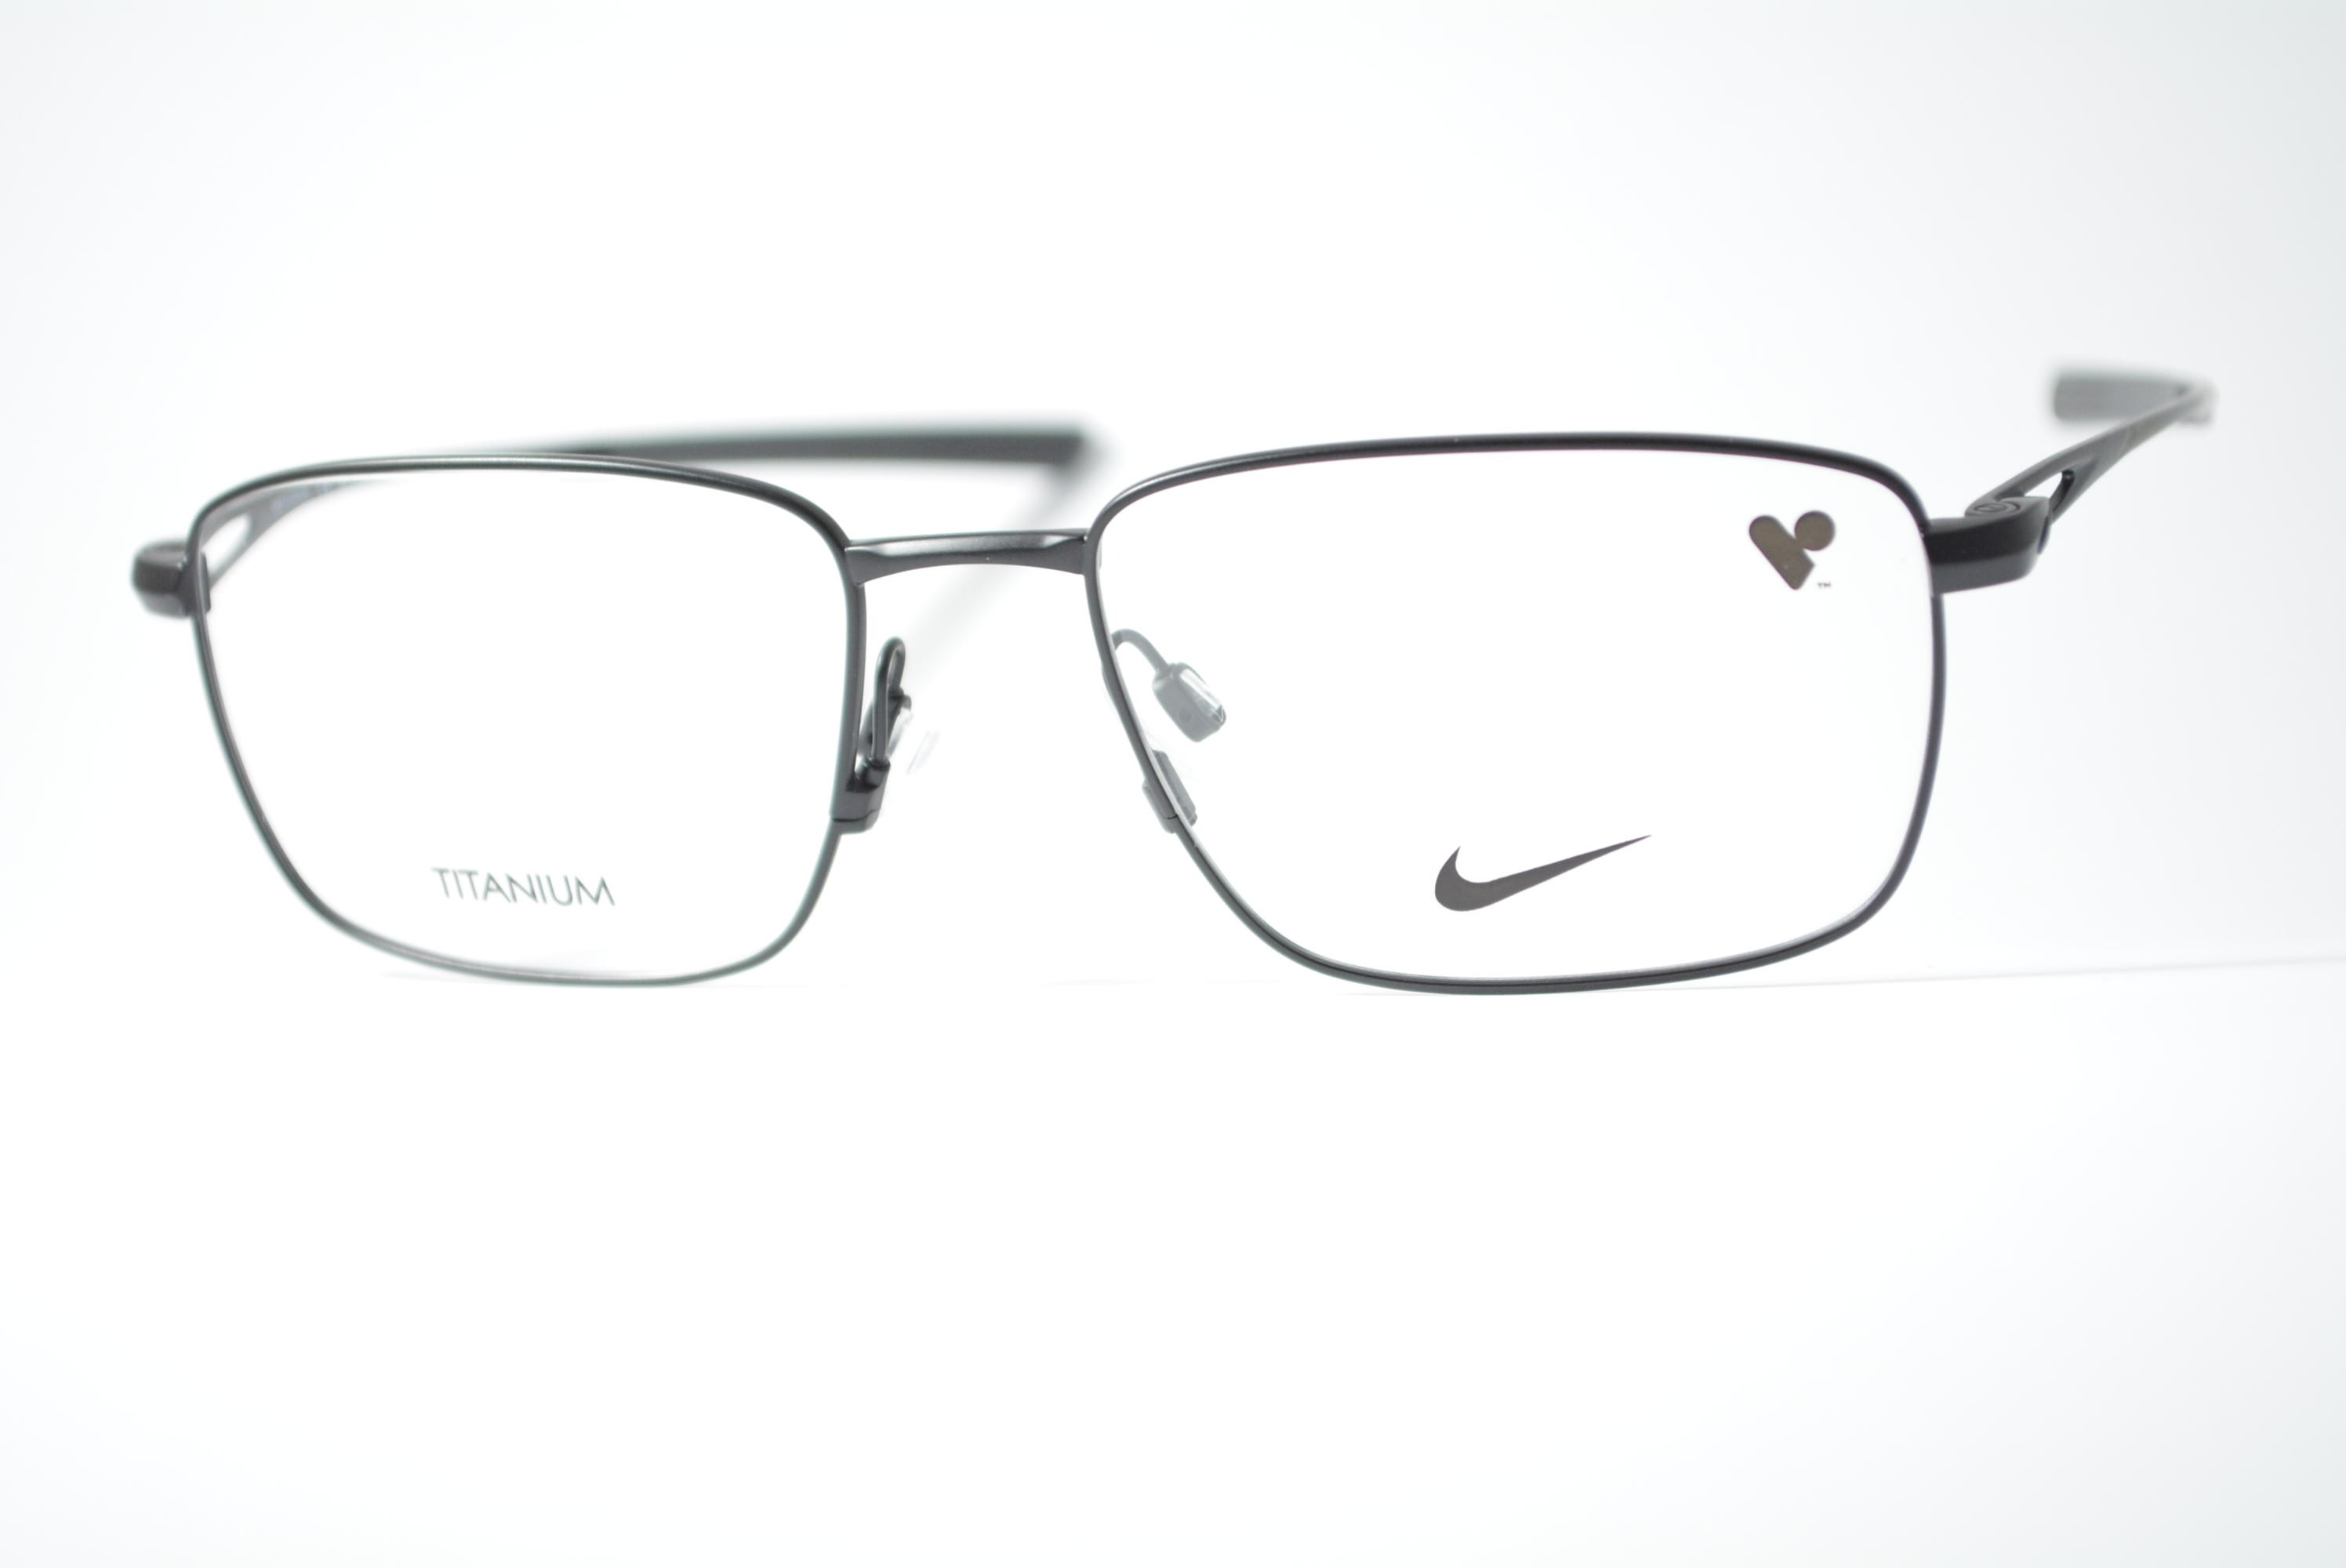 armação de óculos Nike mod 6046 001 titanium